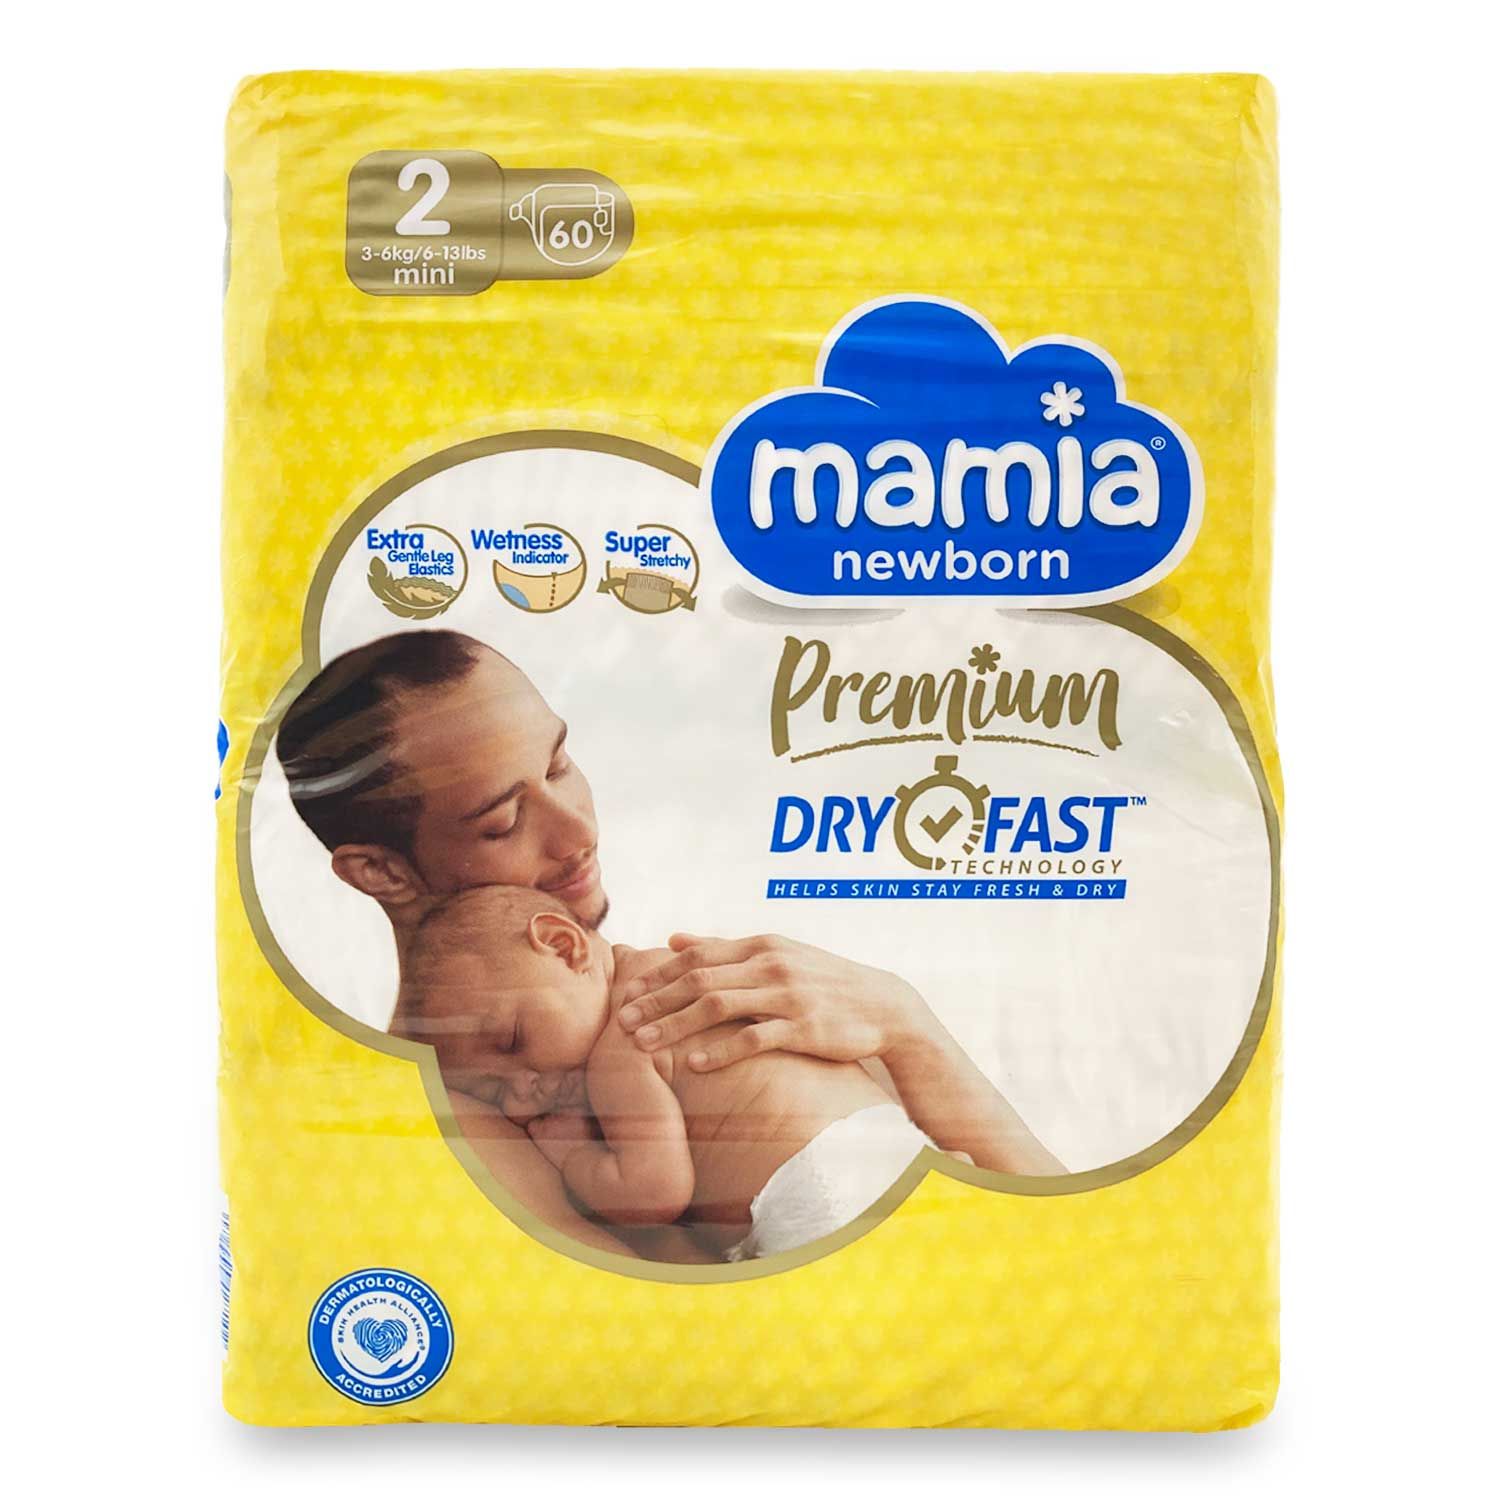 Mamia Newborn Premium Dry Fast - Size 2  60 Pack